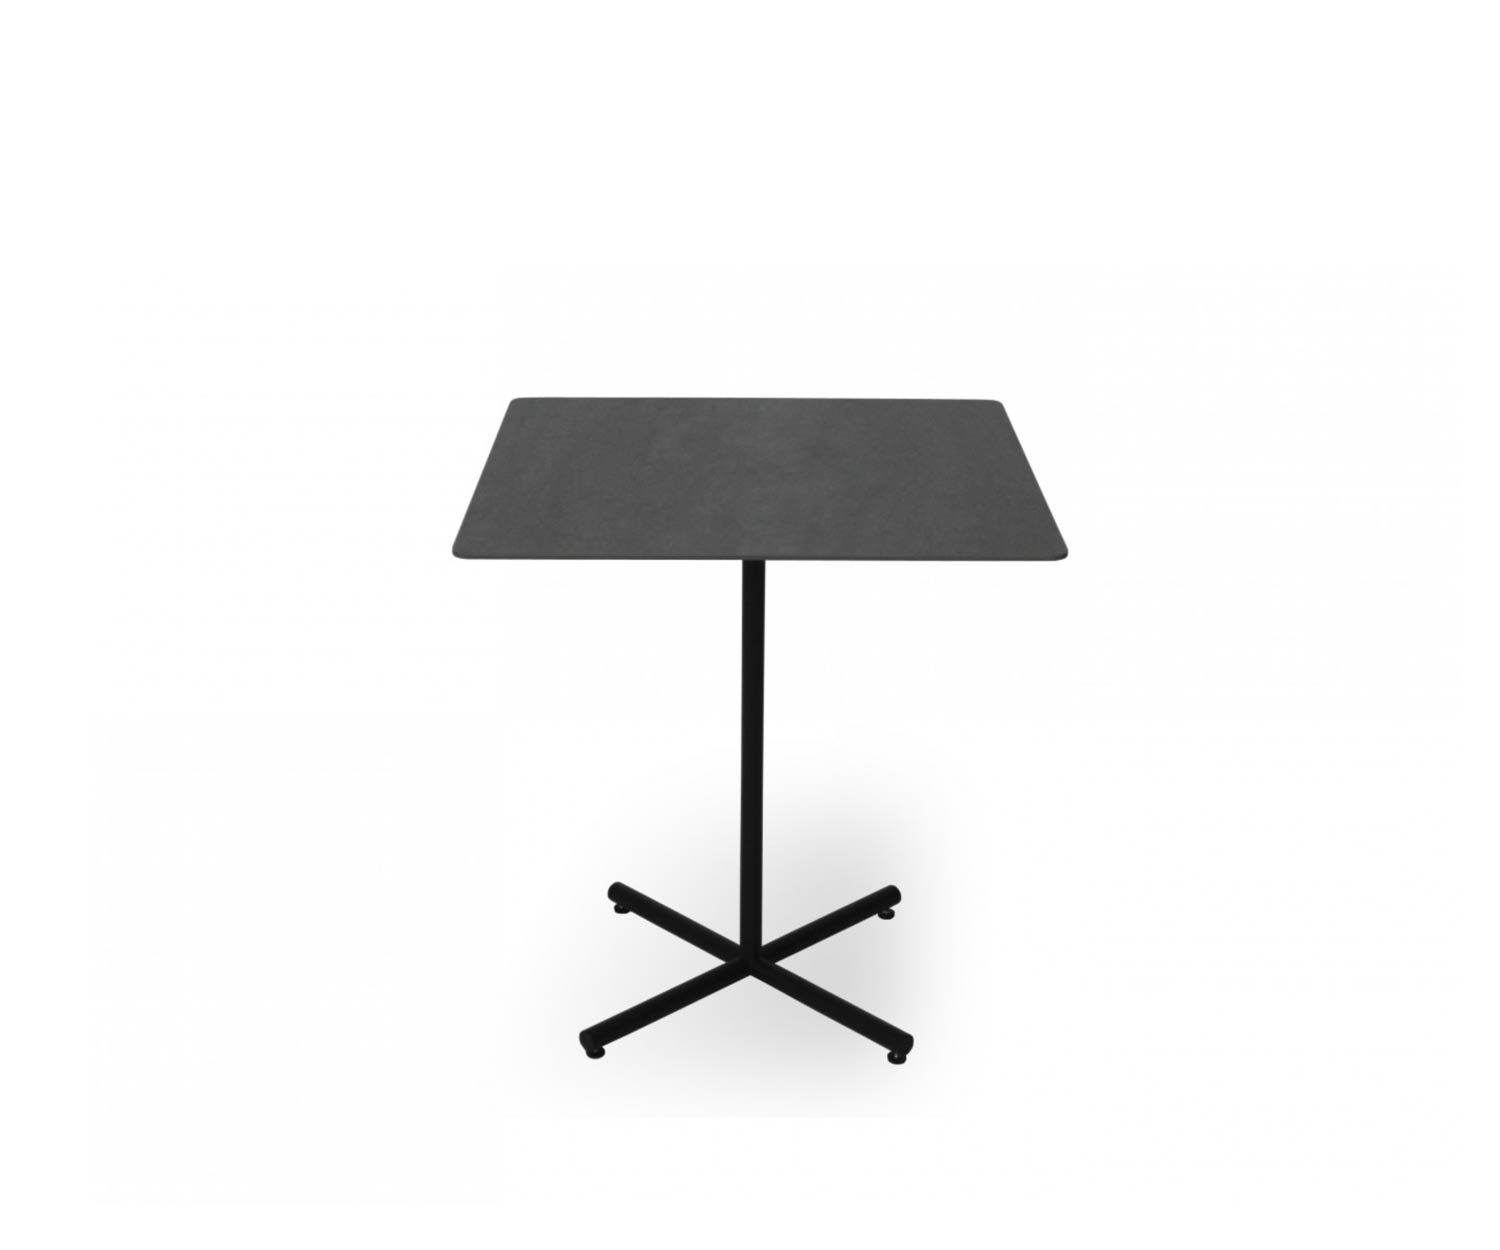 Exclusieve Todus Condor design bistrotafel met rechthoekig tafelblad in antraciet